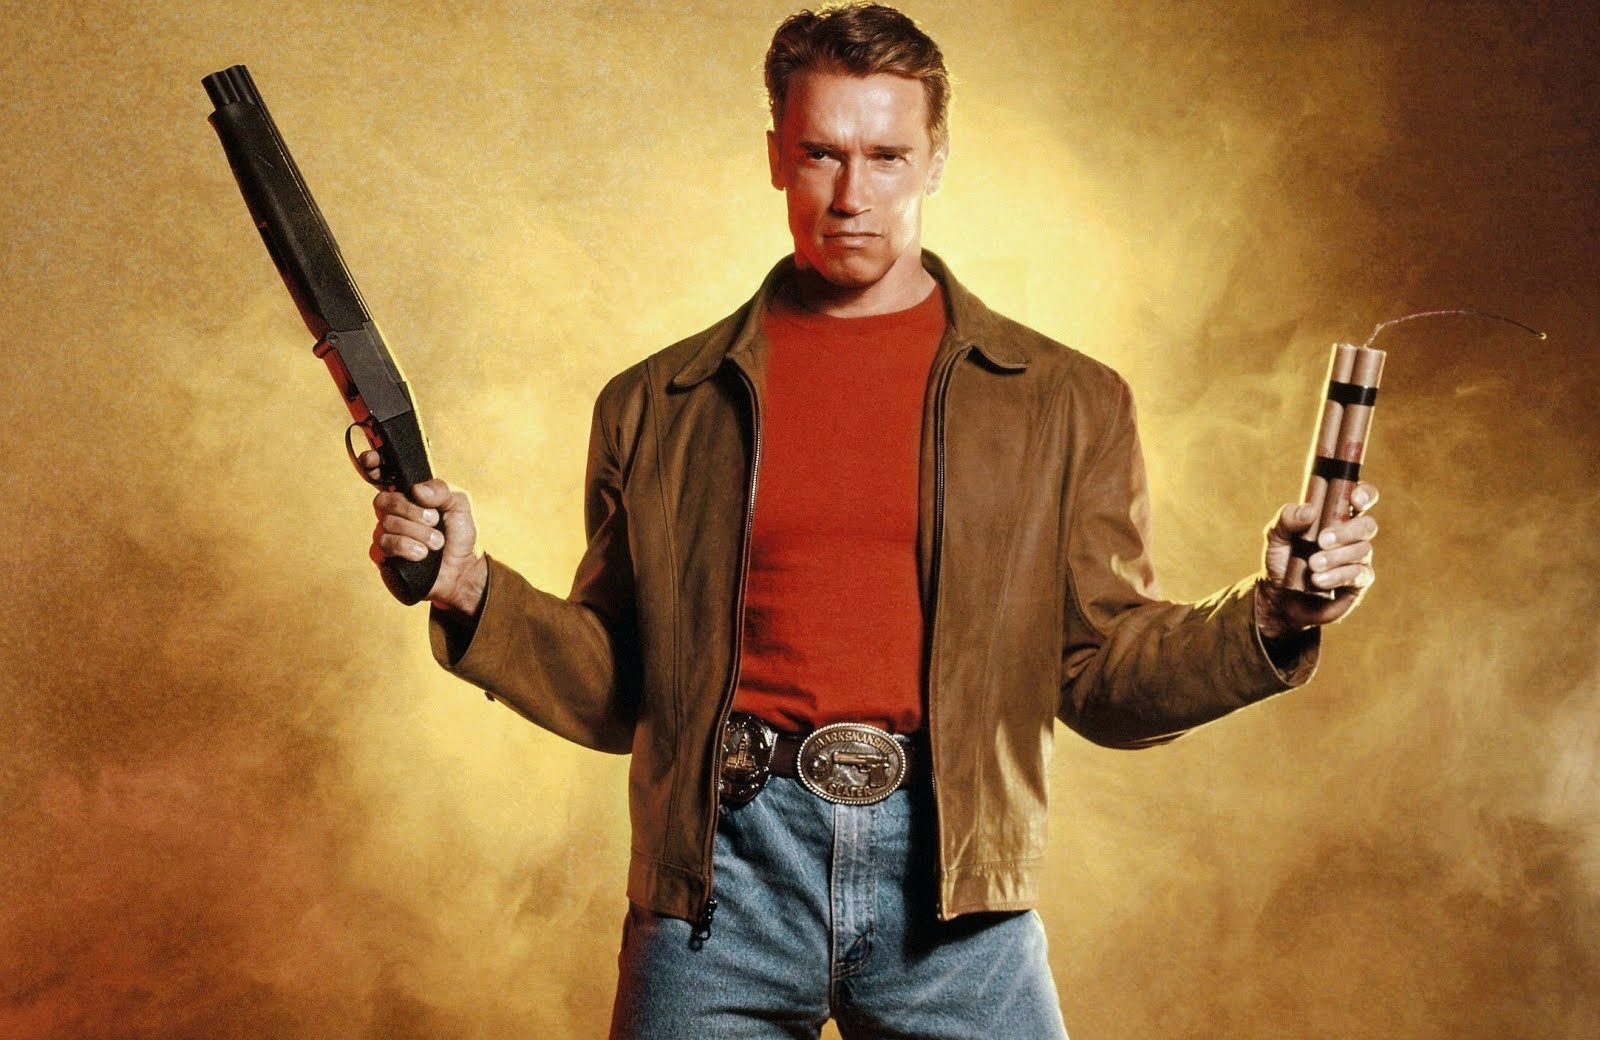 arnold schwarzenegger hd wallpaper,movie,machete,action film,gunfighter,jacket